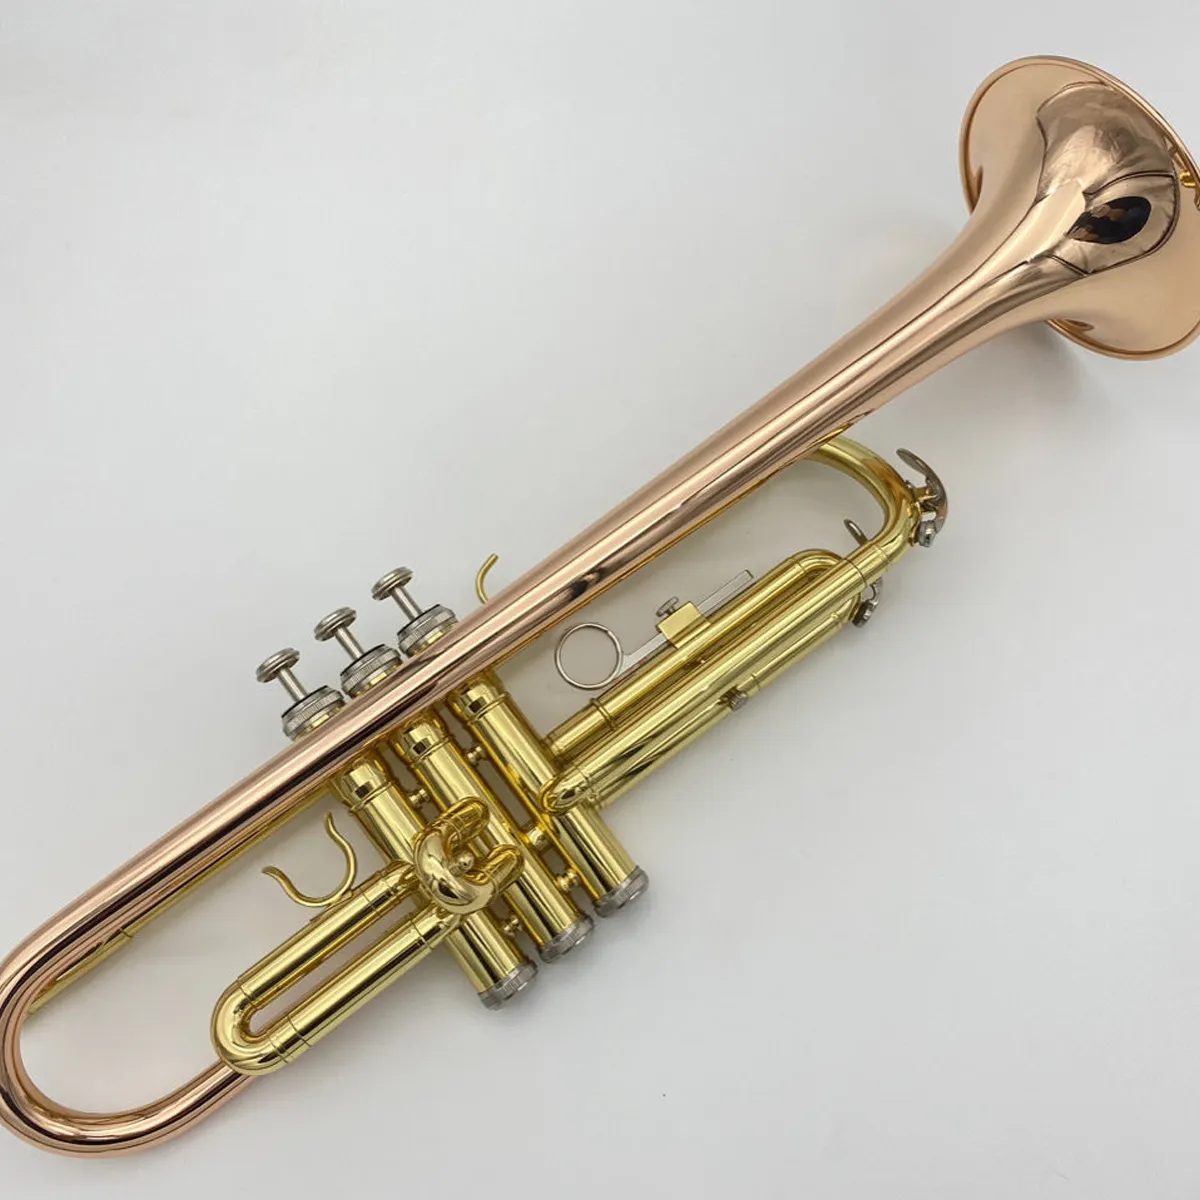 Hoogwaardig professioneel trompetinstrument voor beginners om vergulde fosforbrons trompet met omgekeerde greep te spelen